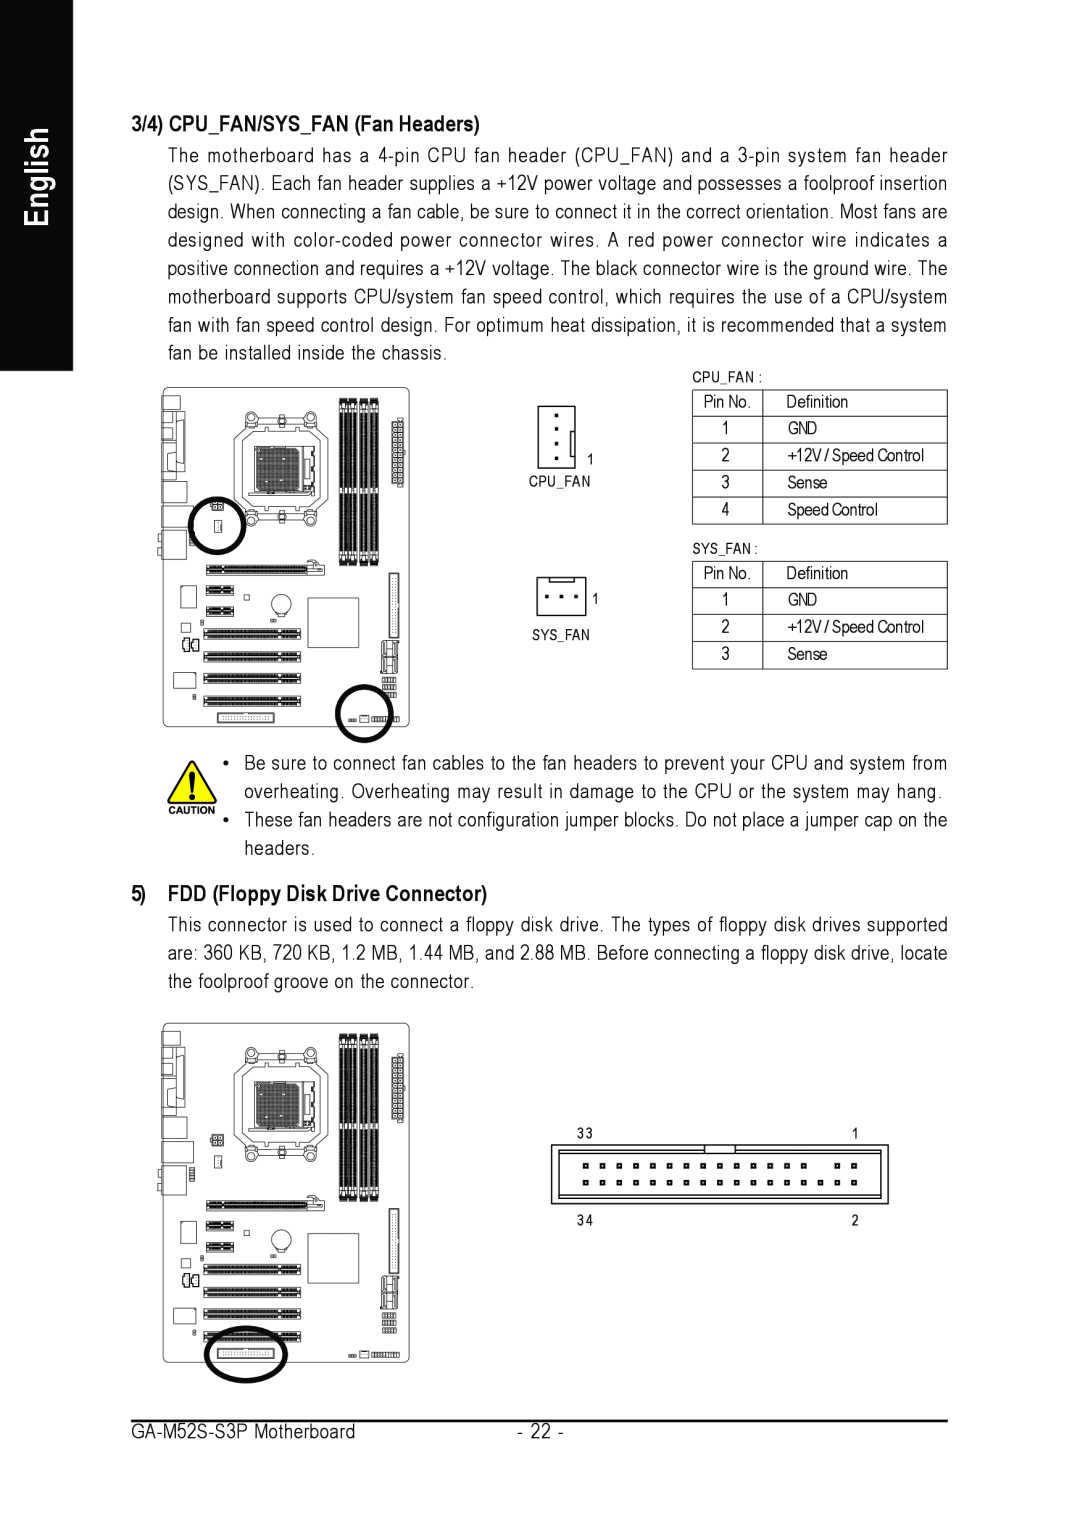 Gigabyte GA-M52S-S3P user manual 3/4 CPUFAN/SYSFAN Fan Headers, FDD Floppy Disk Drive Connector, English, Cpufan, Sysfan 